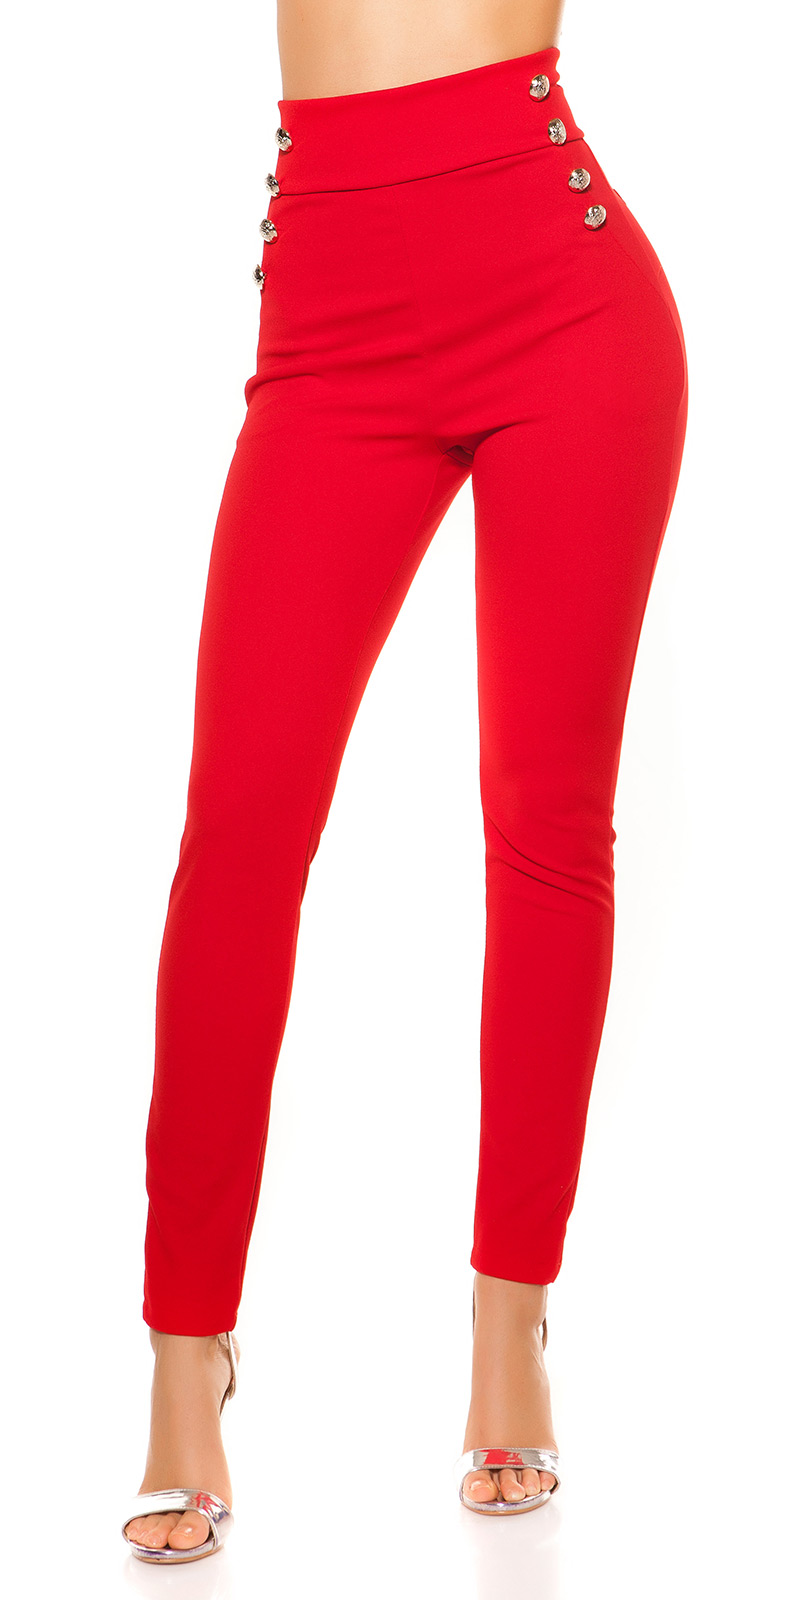 Hohe taillierte rote Hose, rote Hose, hohe taillierte breite Beinhose,  elegante Hose, Hose mit Taschen, Abendhose -  Schweiz